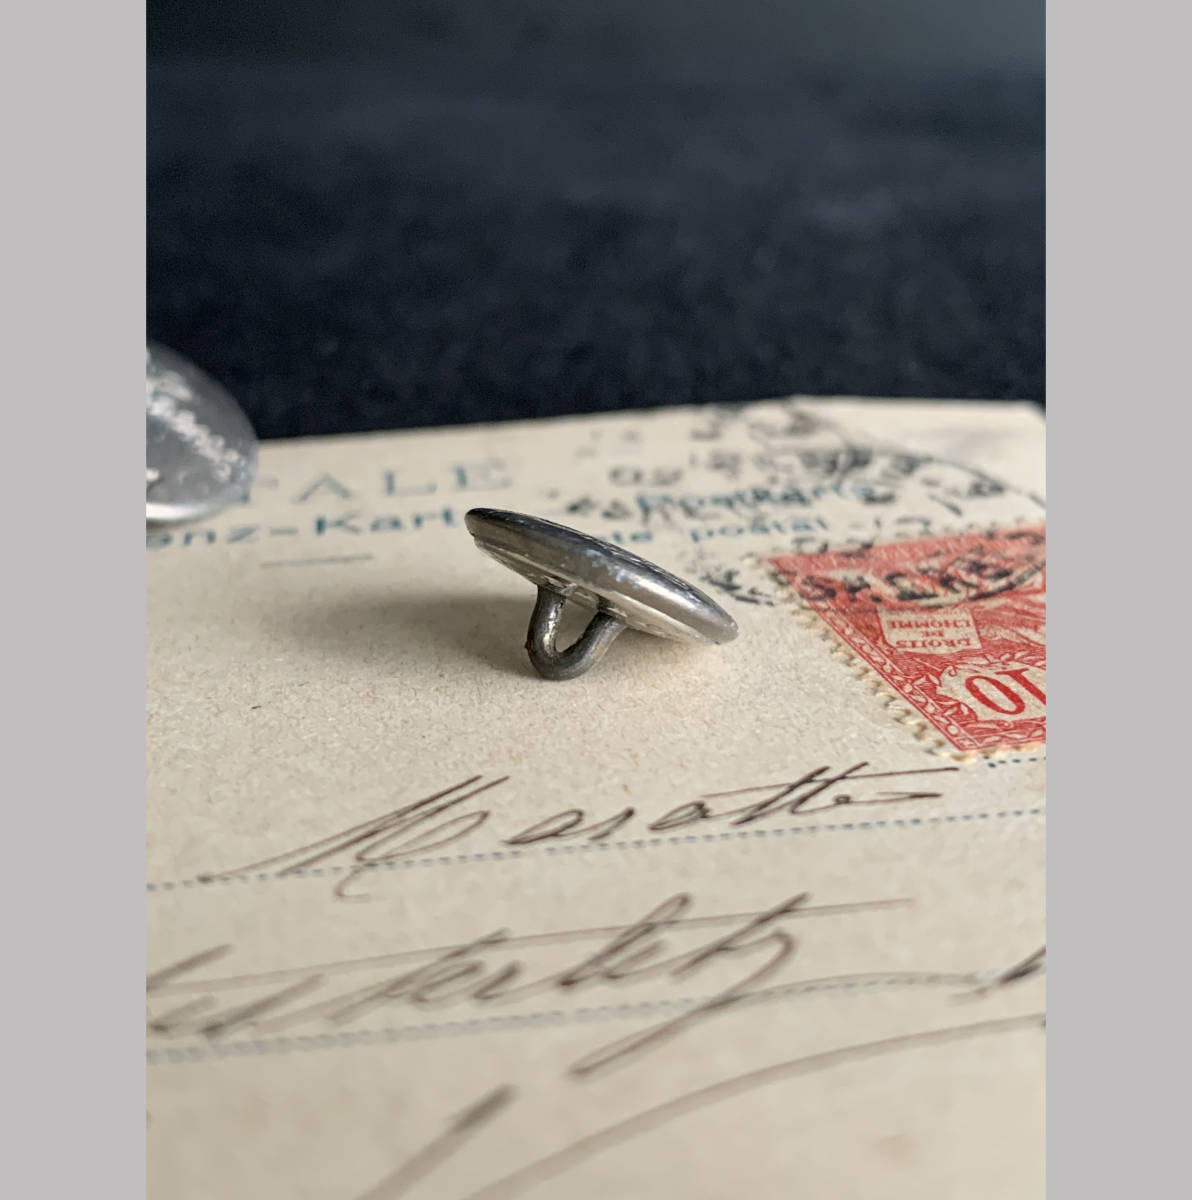 フランス パリ 1900-40s ホワイト メタル ボタン φ14mm 欧州 古着 ハンティング ジャケット 刺繍 裁縫 ヴィンテージ アンティーク 1